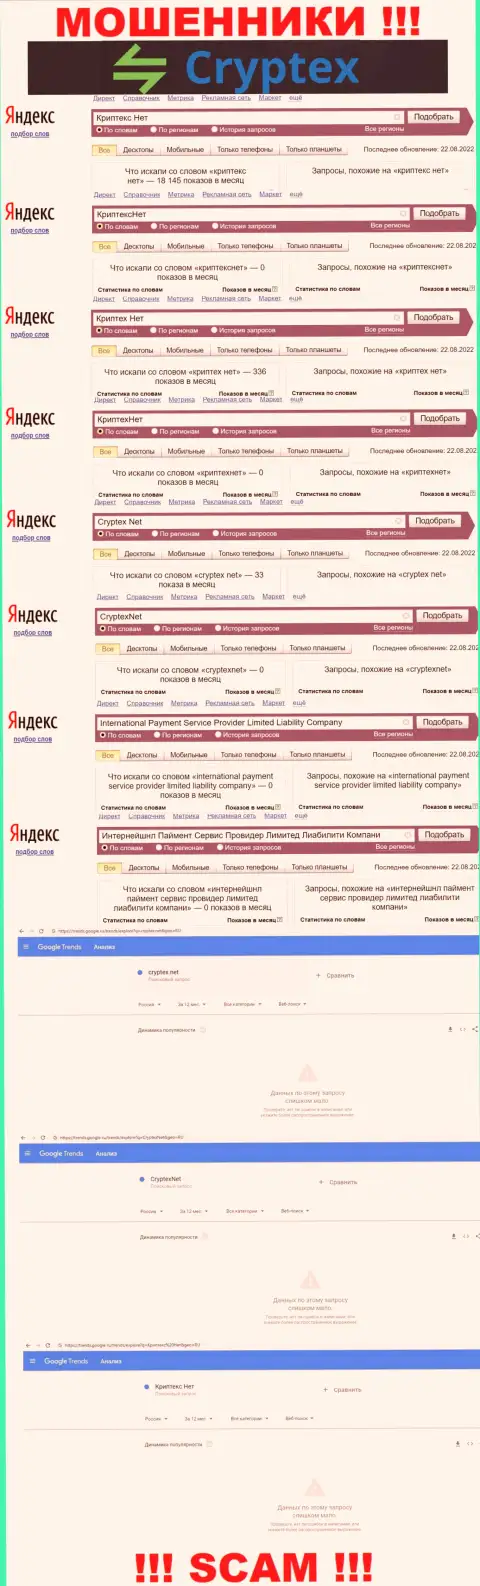 Скрин итогов онлайн запросов по противозаконно действующей конторе Криптекс Нет